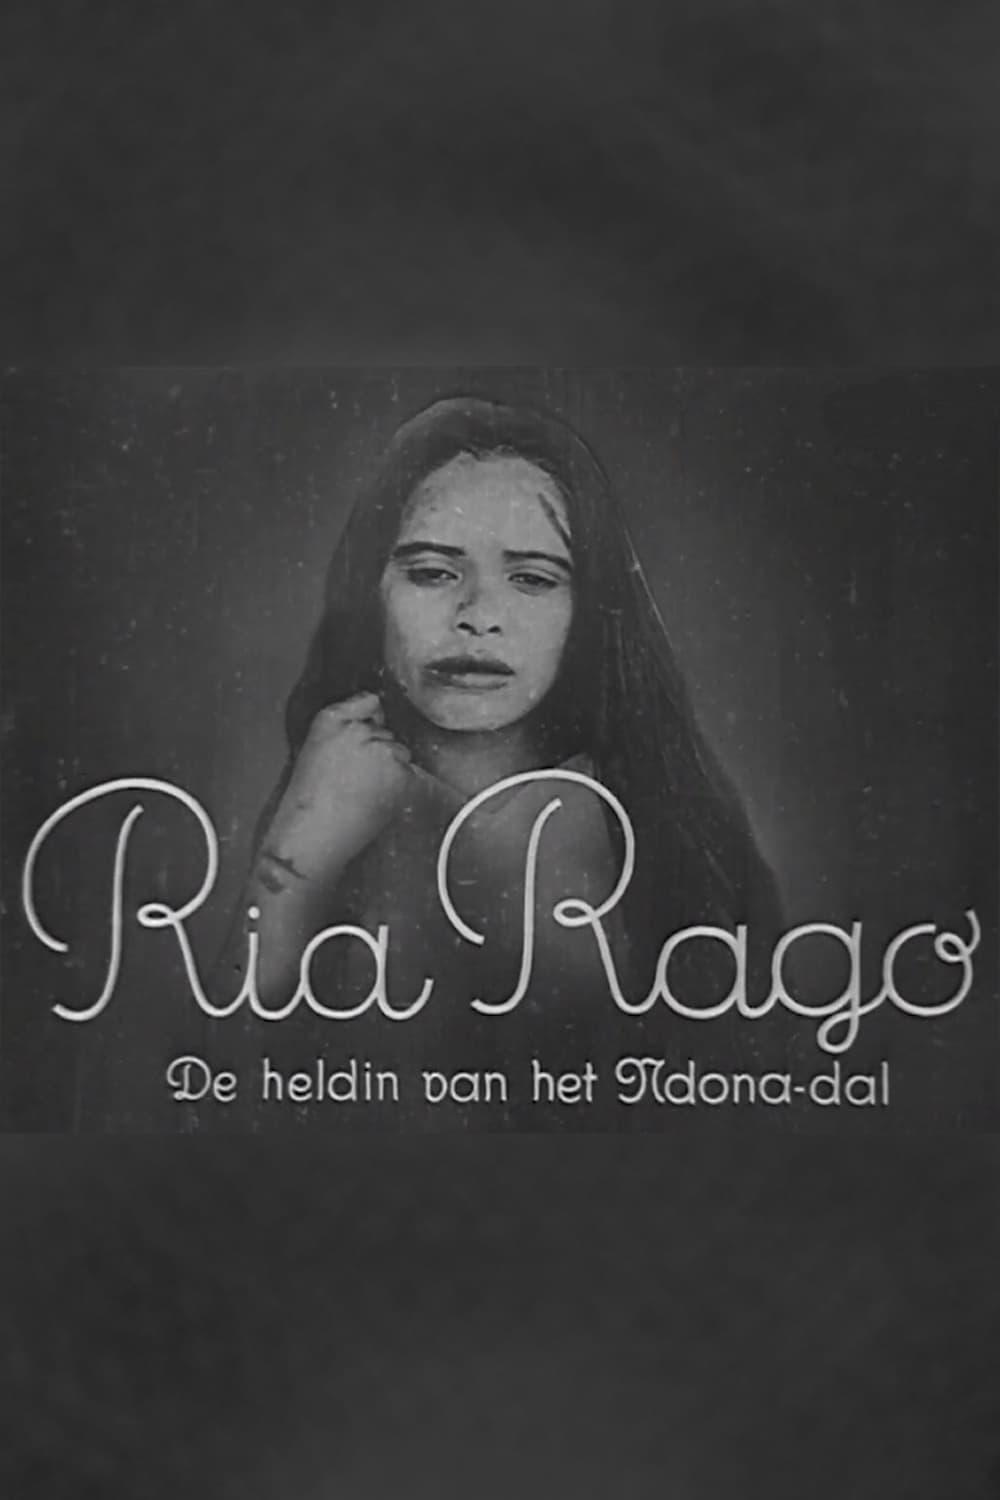 Ria Rago: Pahlawan Wanita dari Lembah Ndona poster